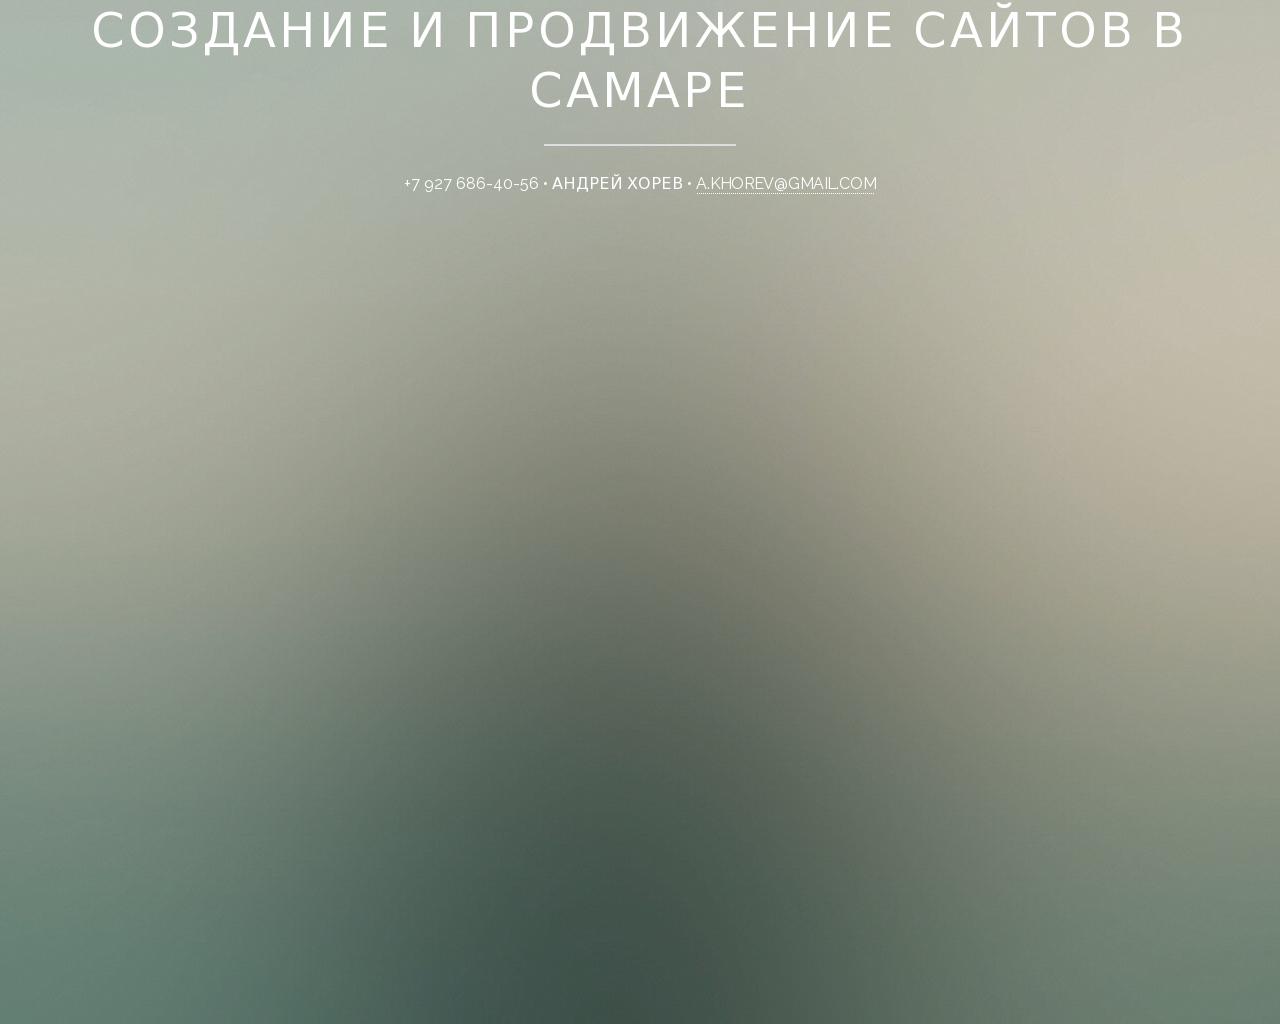 Изображение сайта 63i.ru в разрешении 1280x1024